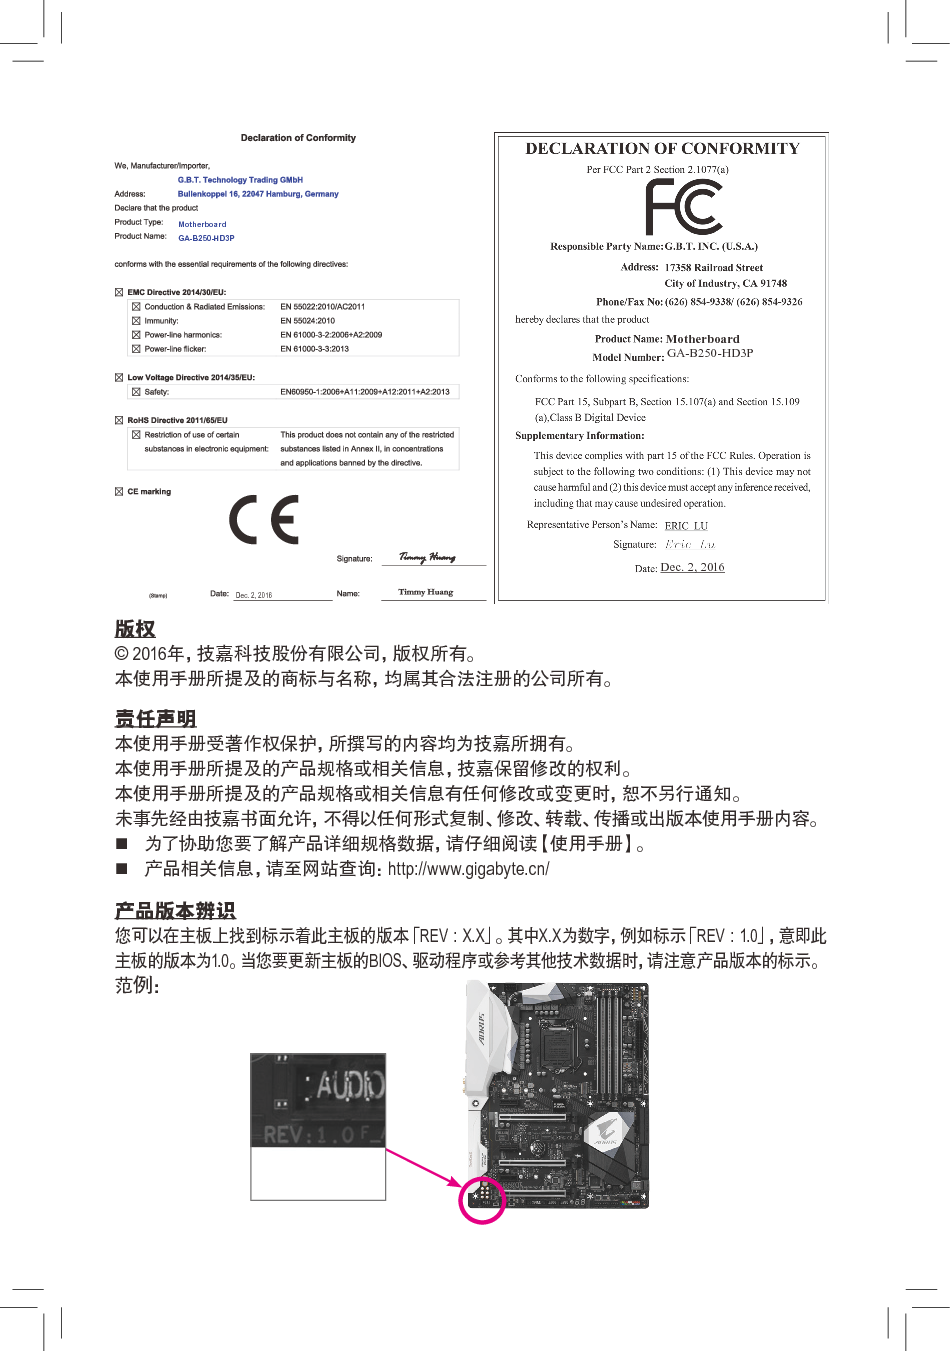 技嘉 Gigabyte GA-B250-HD3P 使用手册 第1页